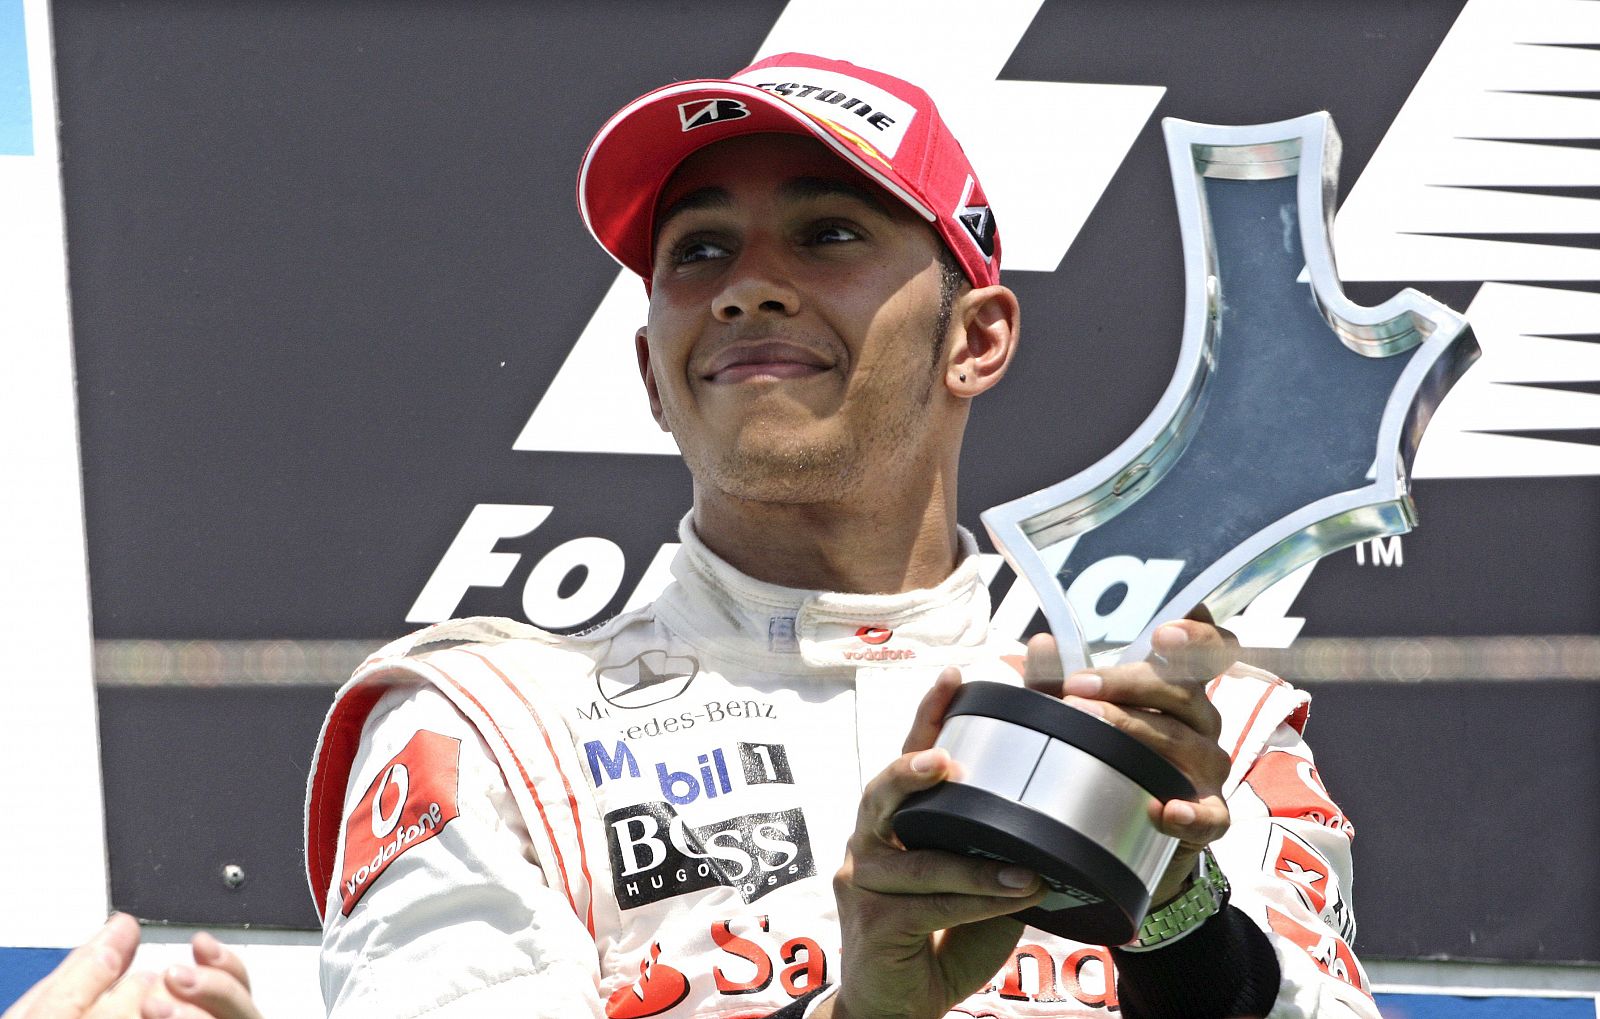 El piloto británico Lewis Hamilton, de la escudería McLaren